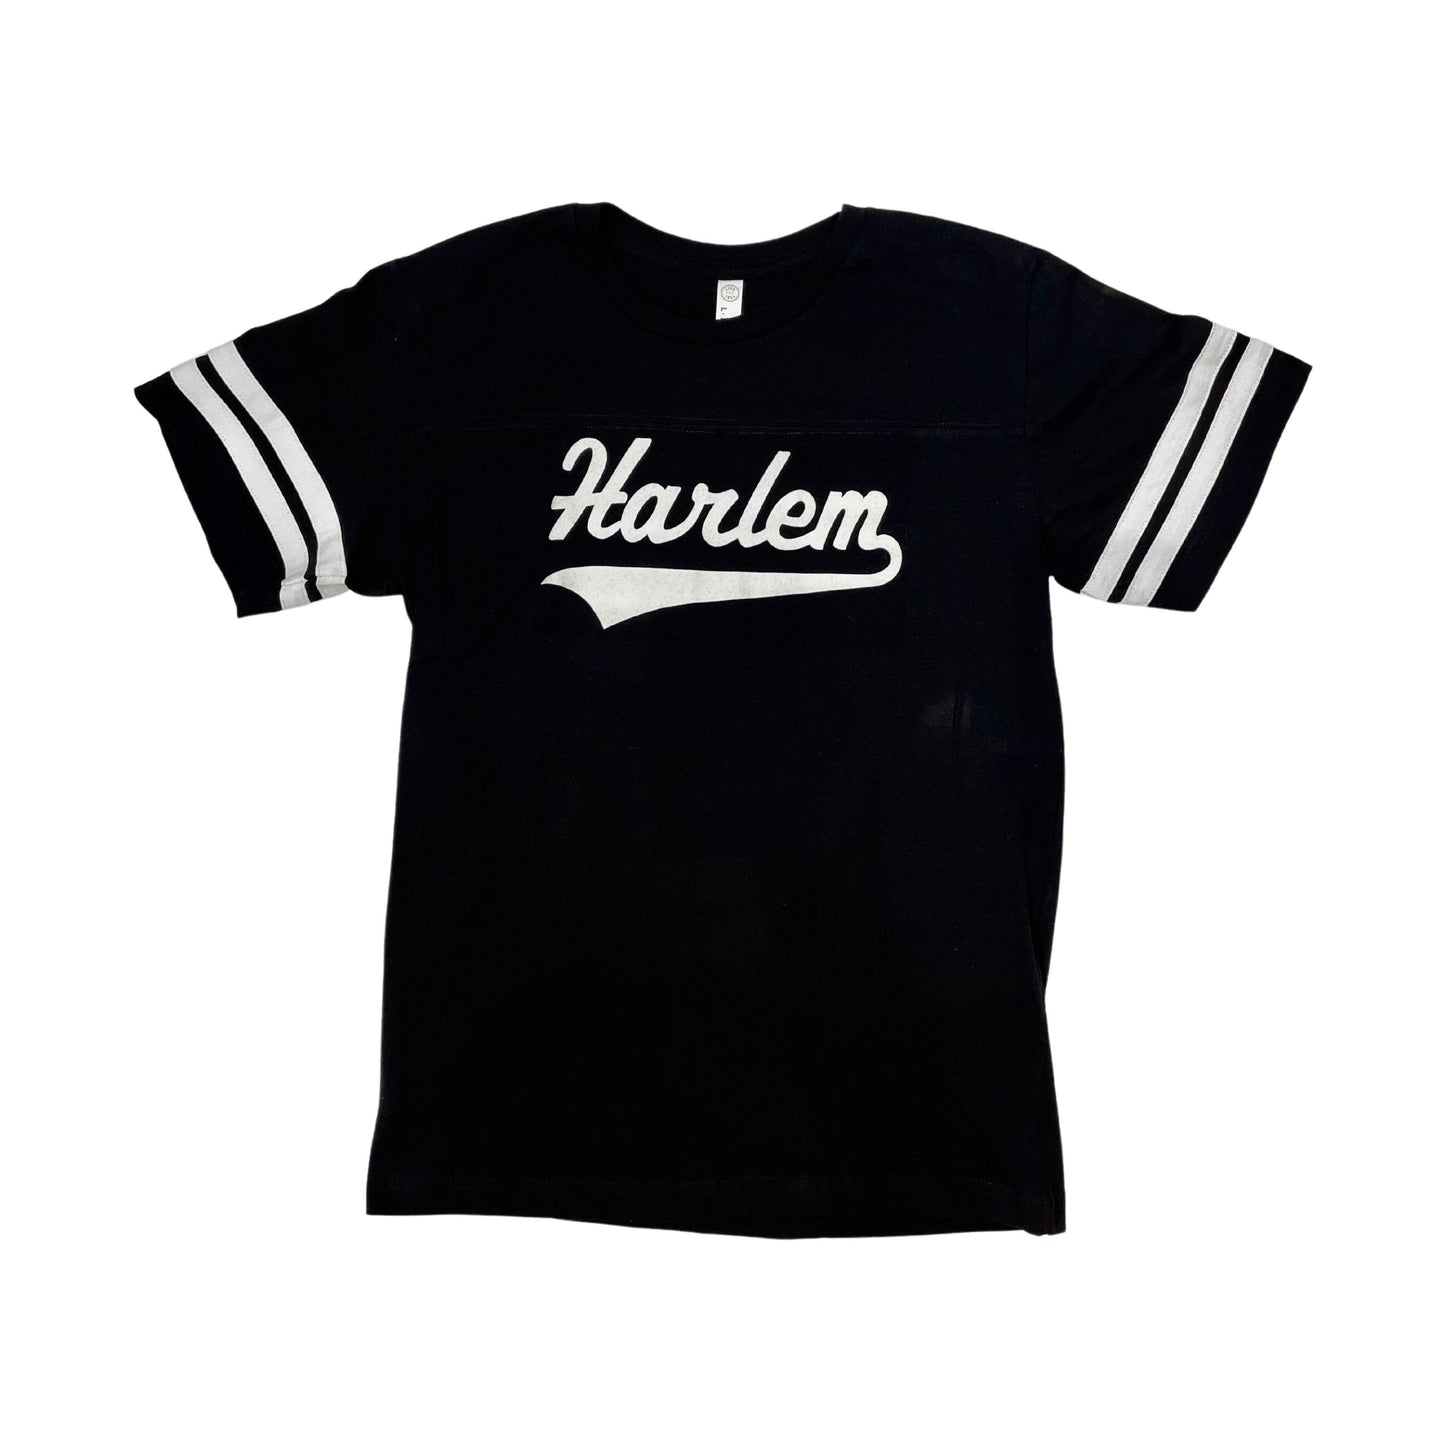 Harlem Football Shirt